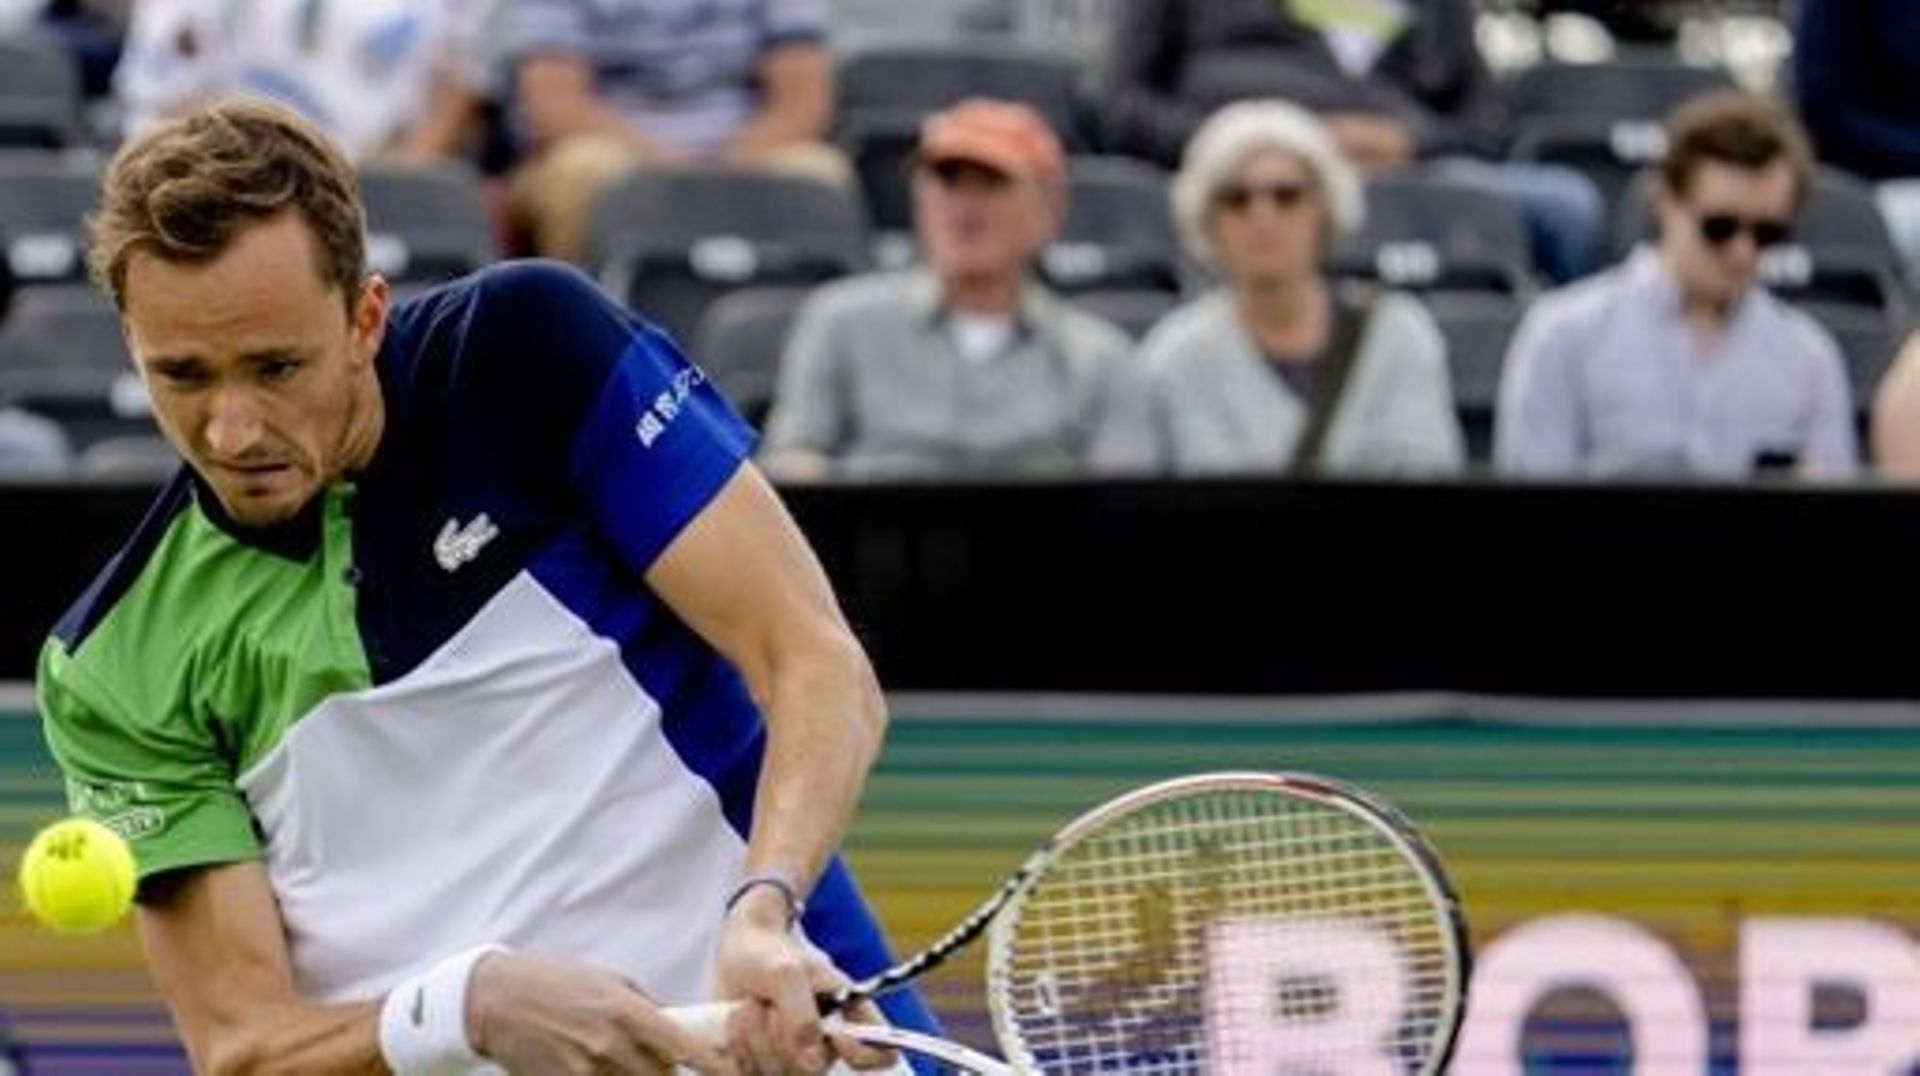 ATP Rosmalen - Medvedev rejoint van Rijthoven en finale et redevient N.1 mondial